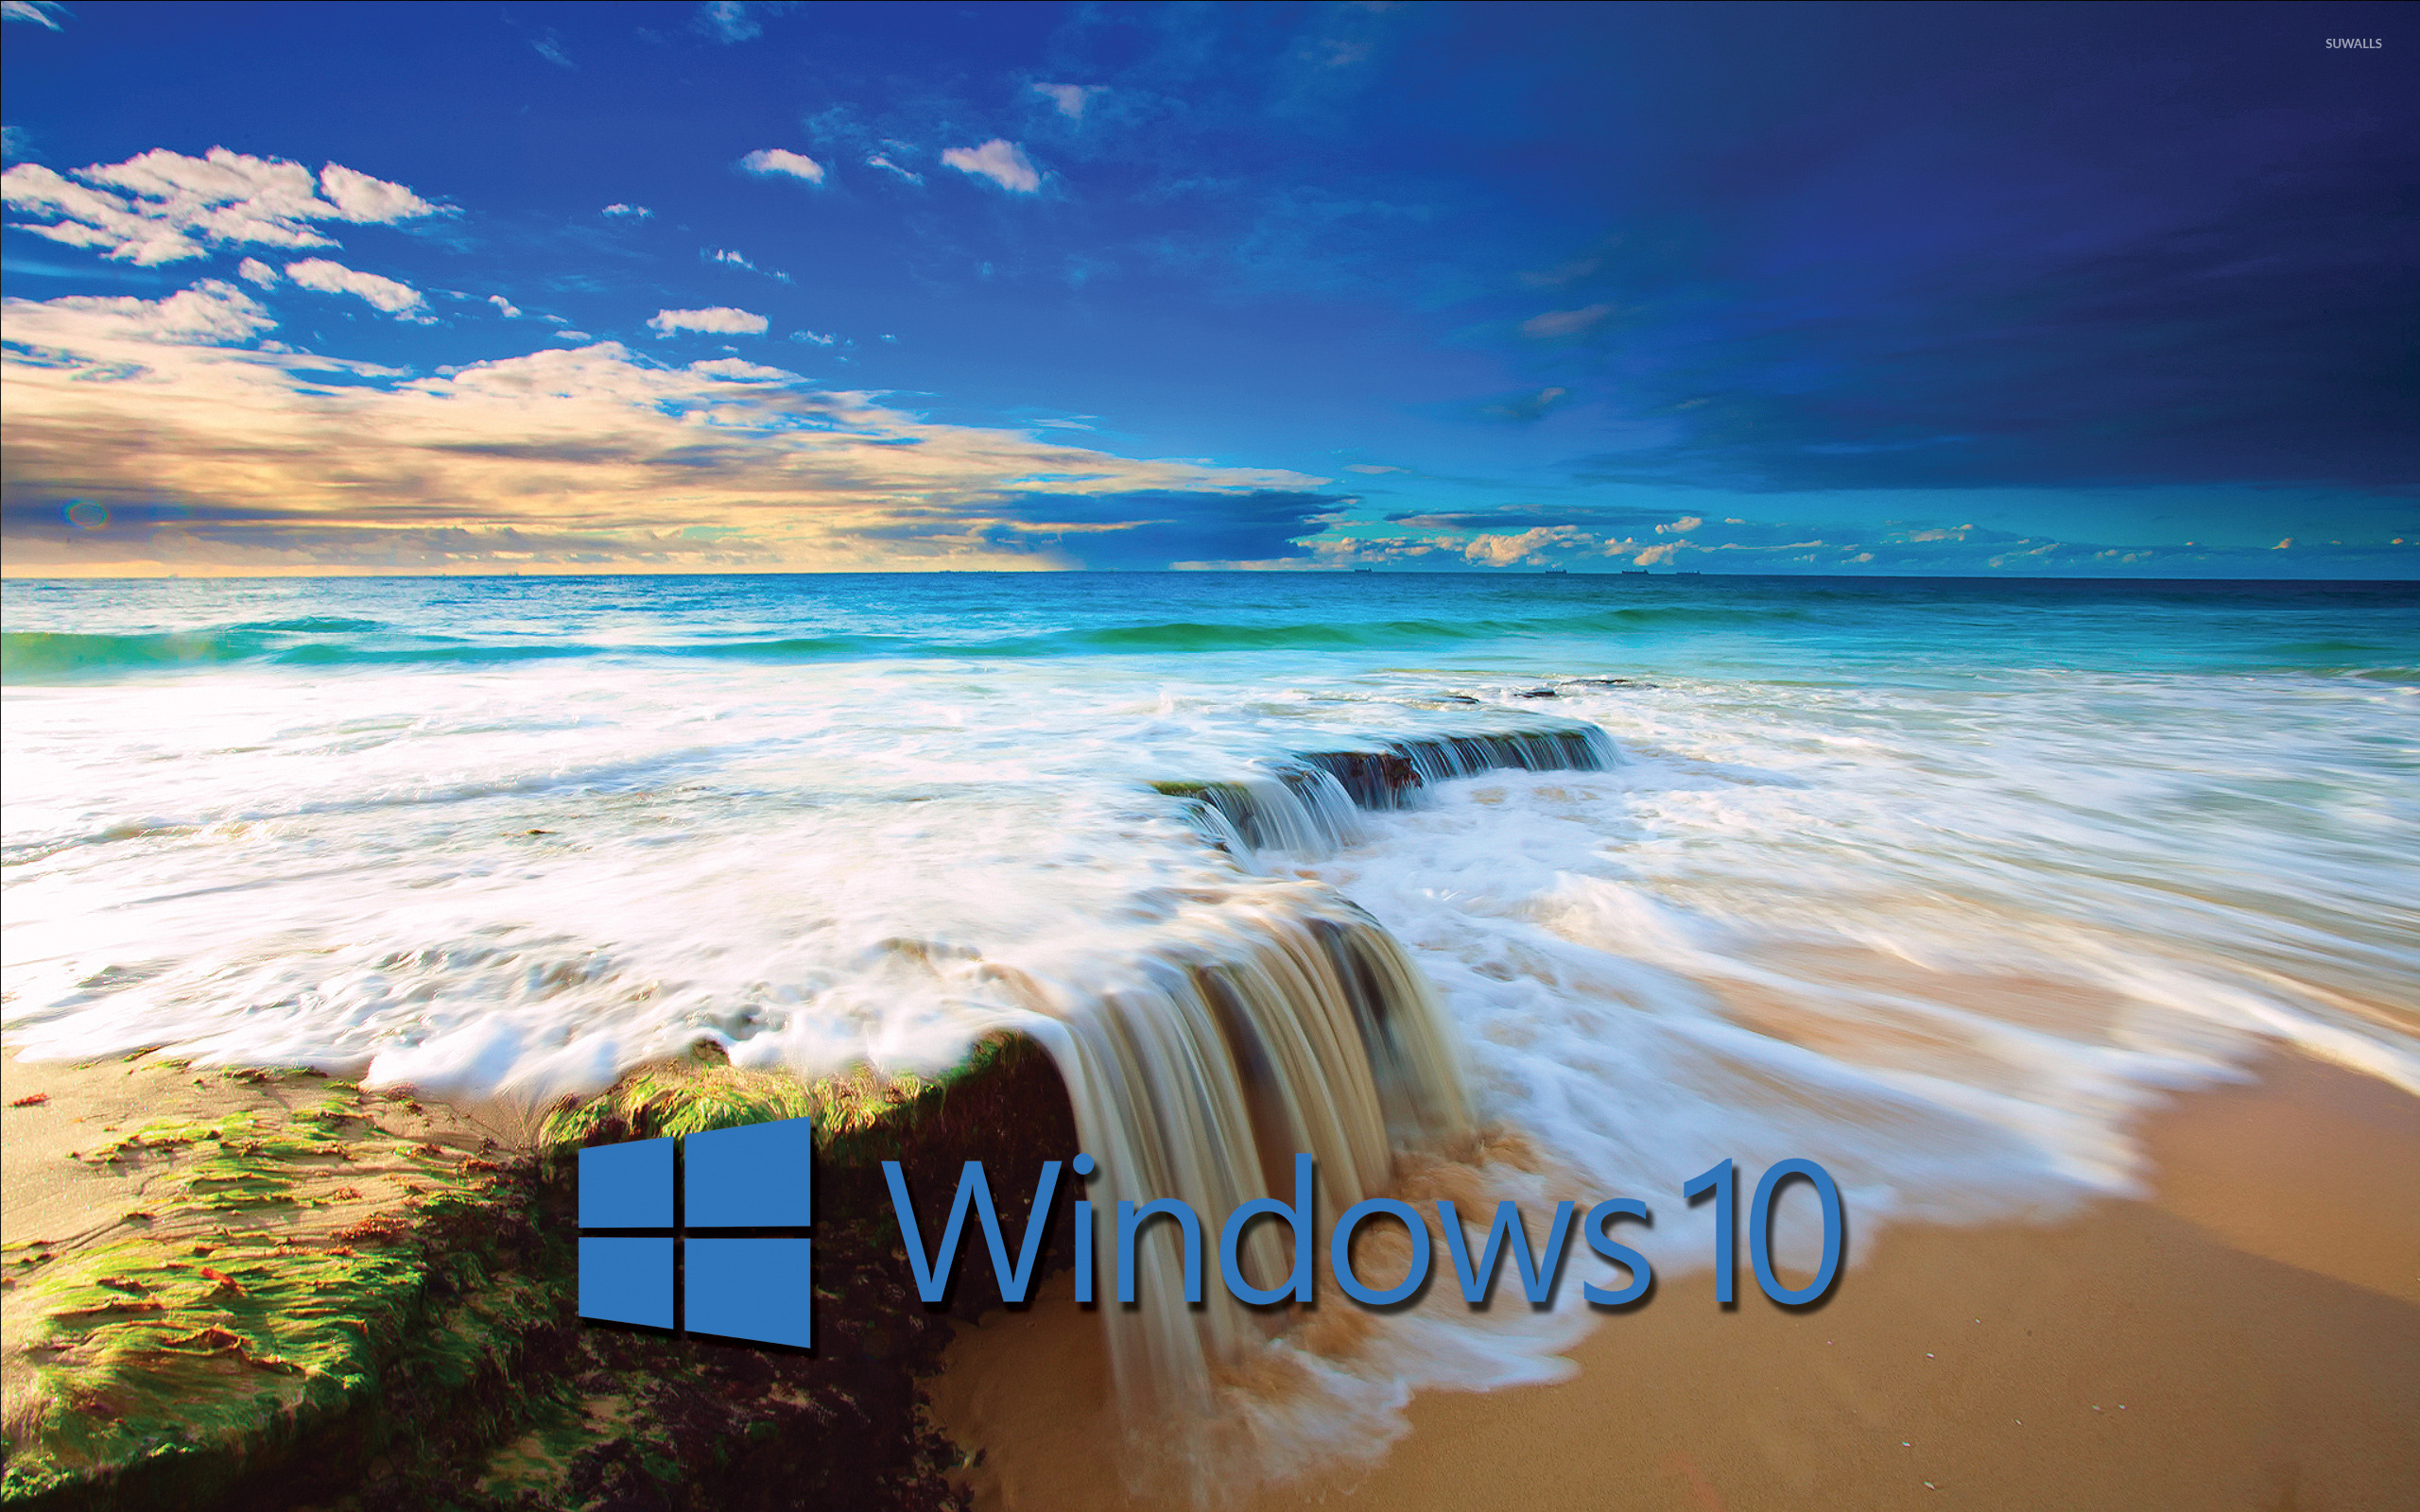 Windows 10 blue text logo on the golden beach wallpaper - Computer ...